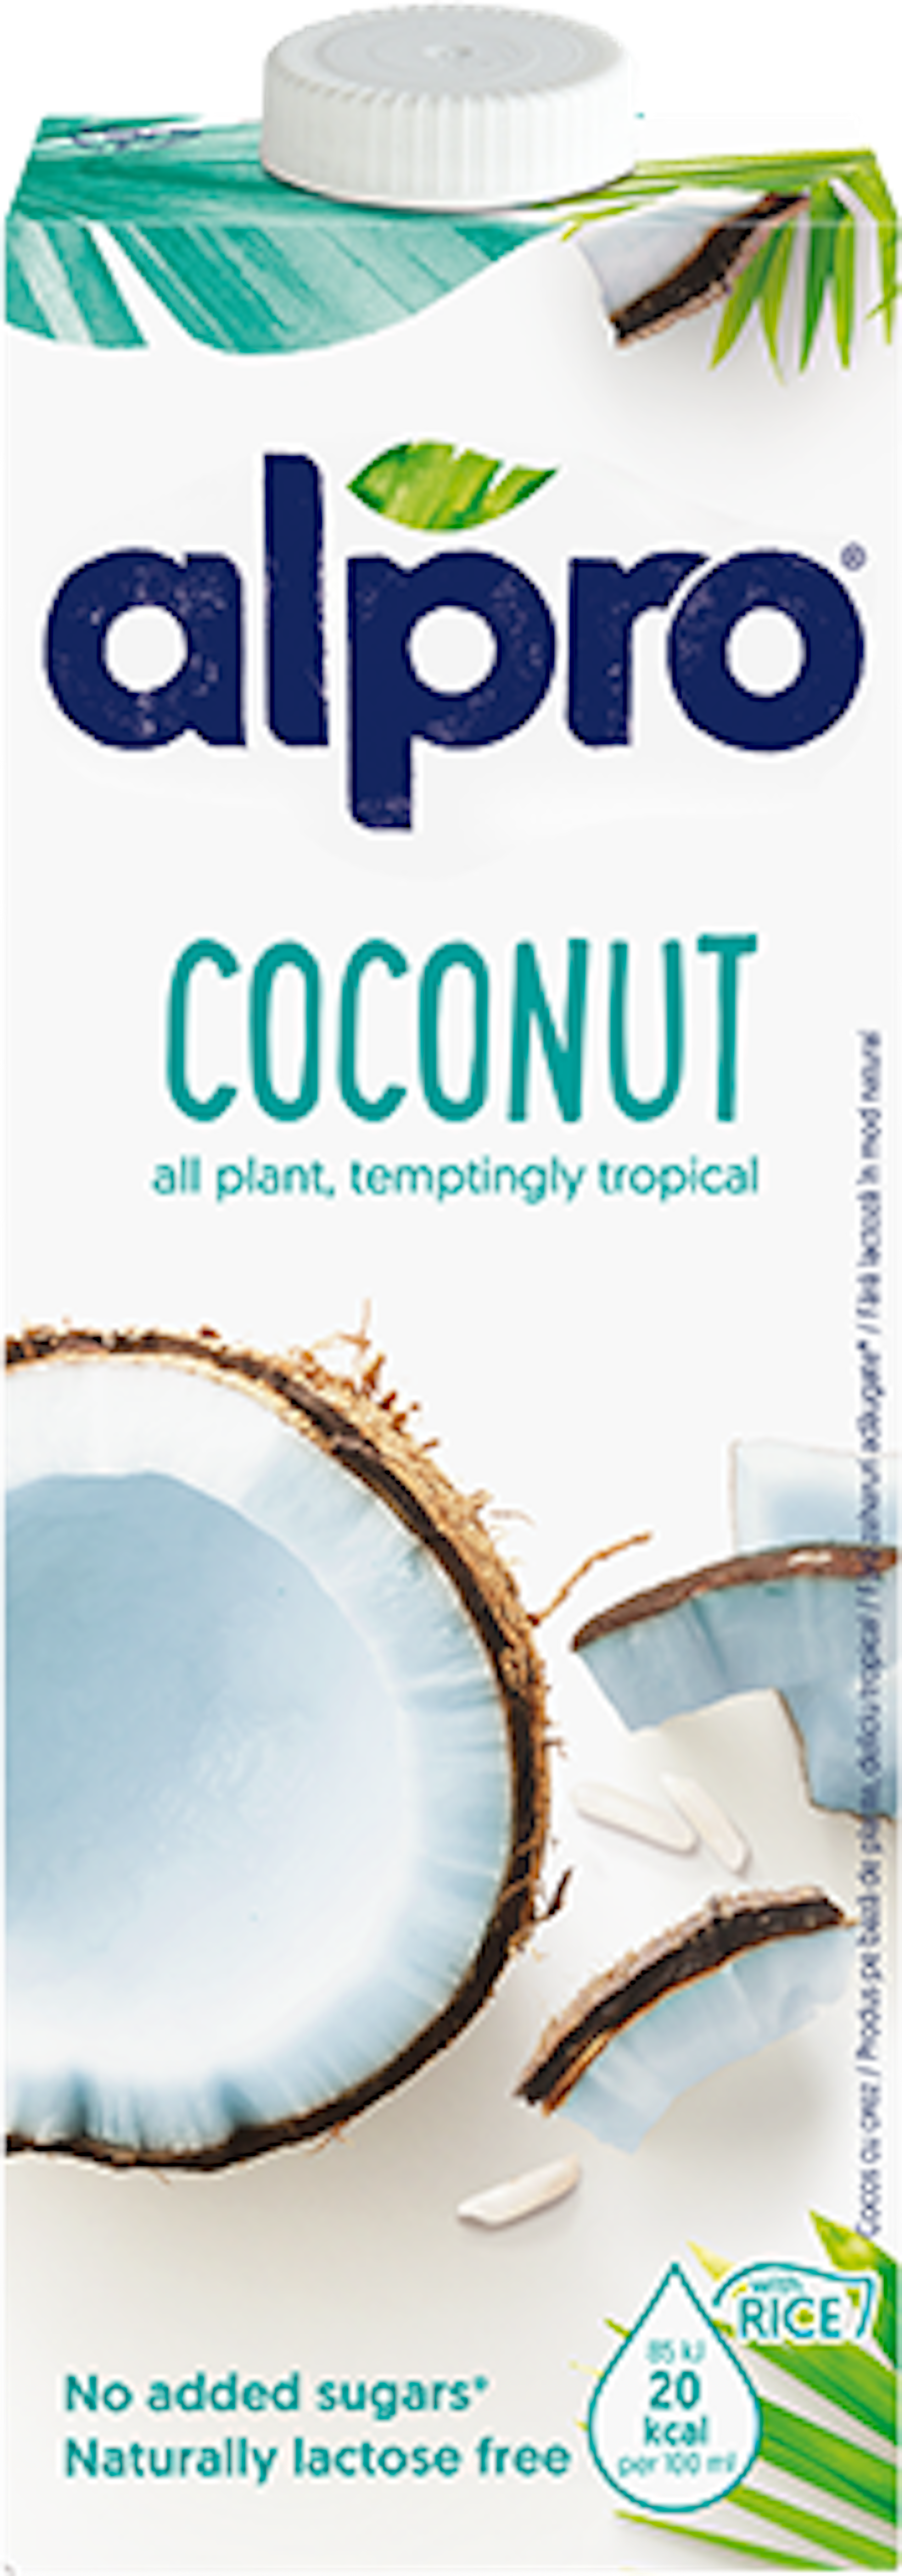 Coconut Original